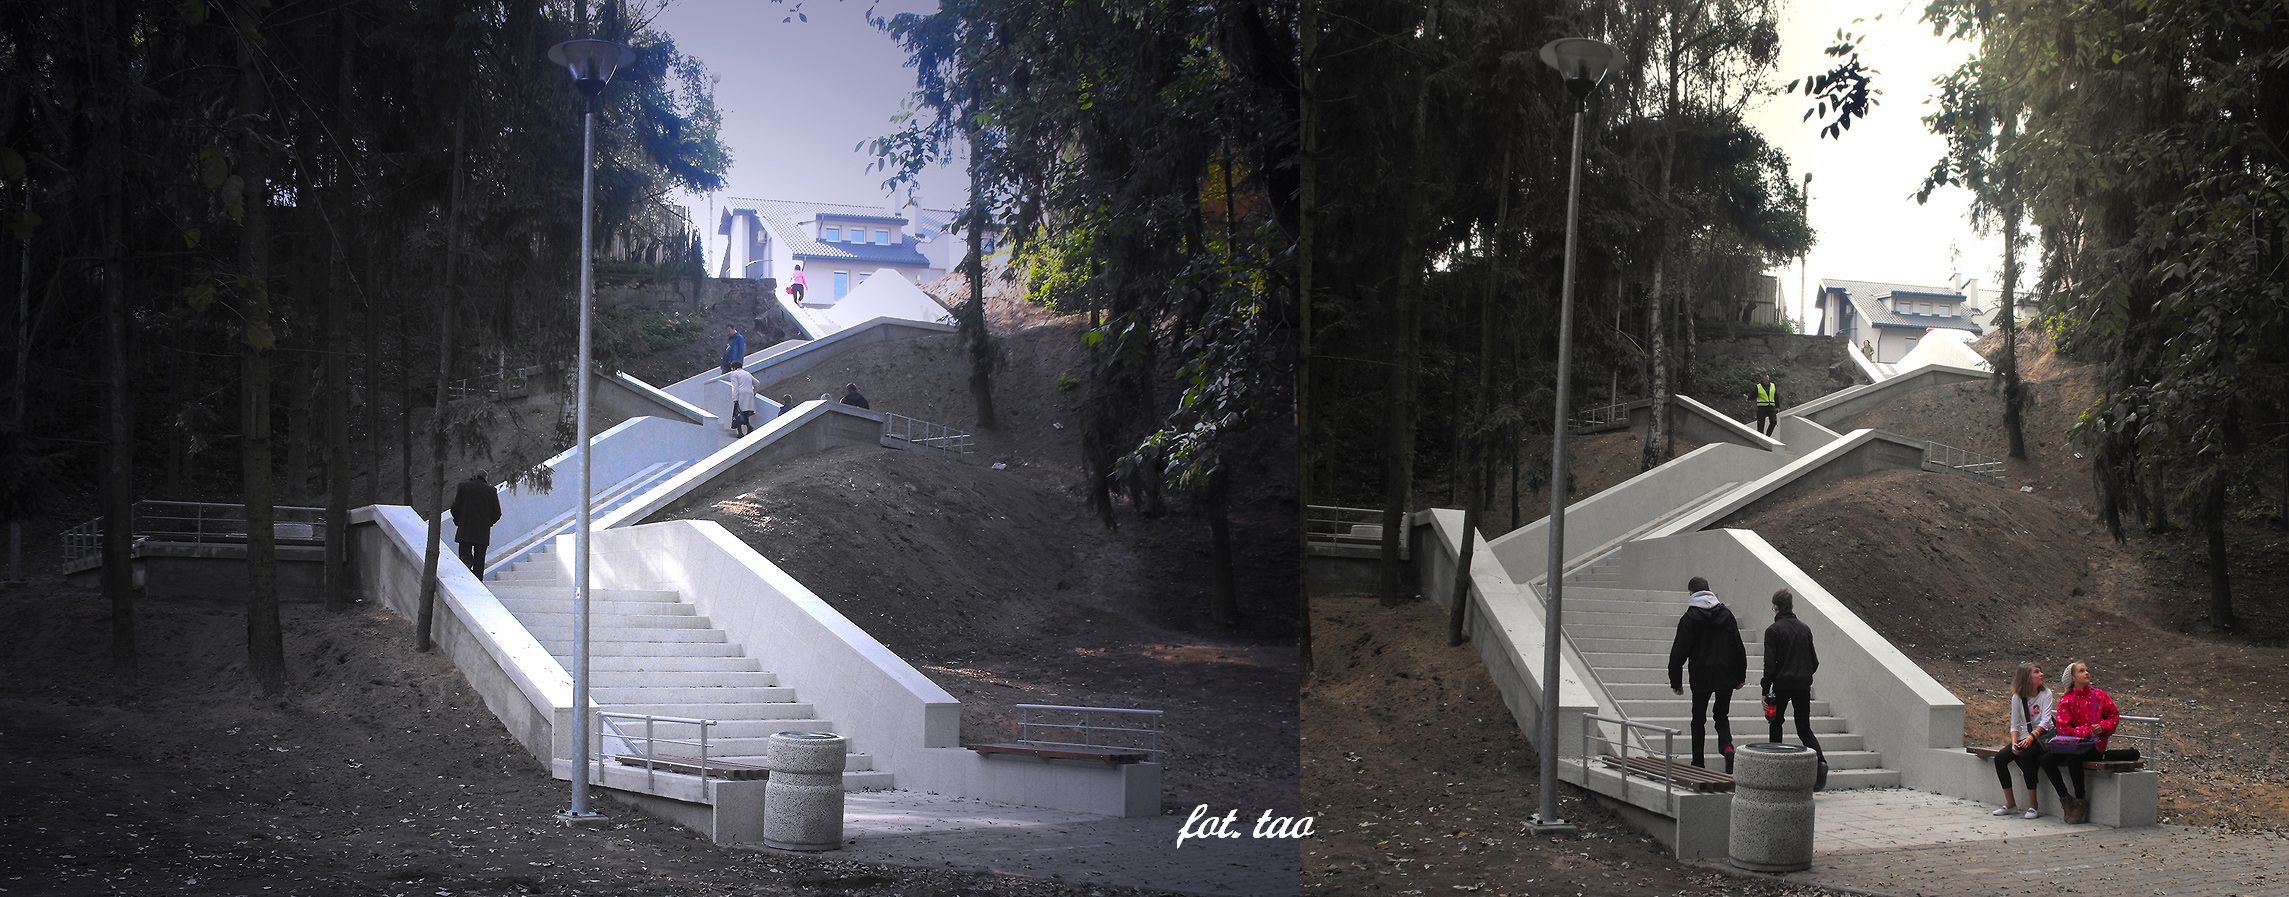 Odnowione schody z rynku do ul. Narutowicza, październik 2013 r.